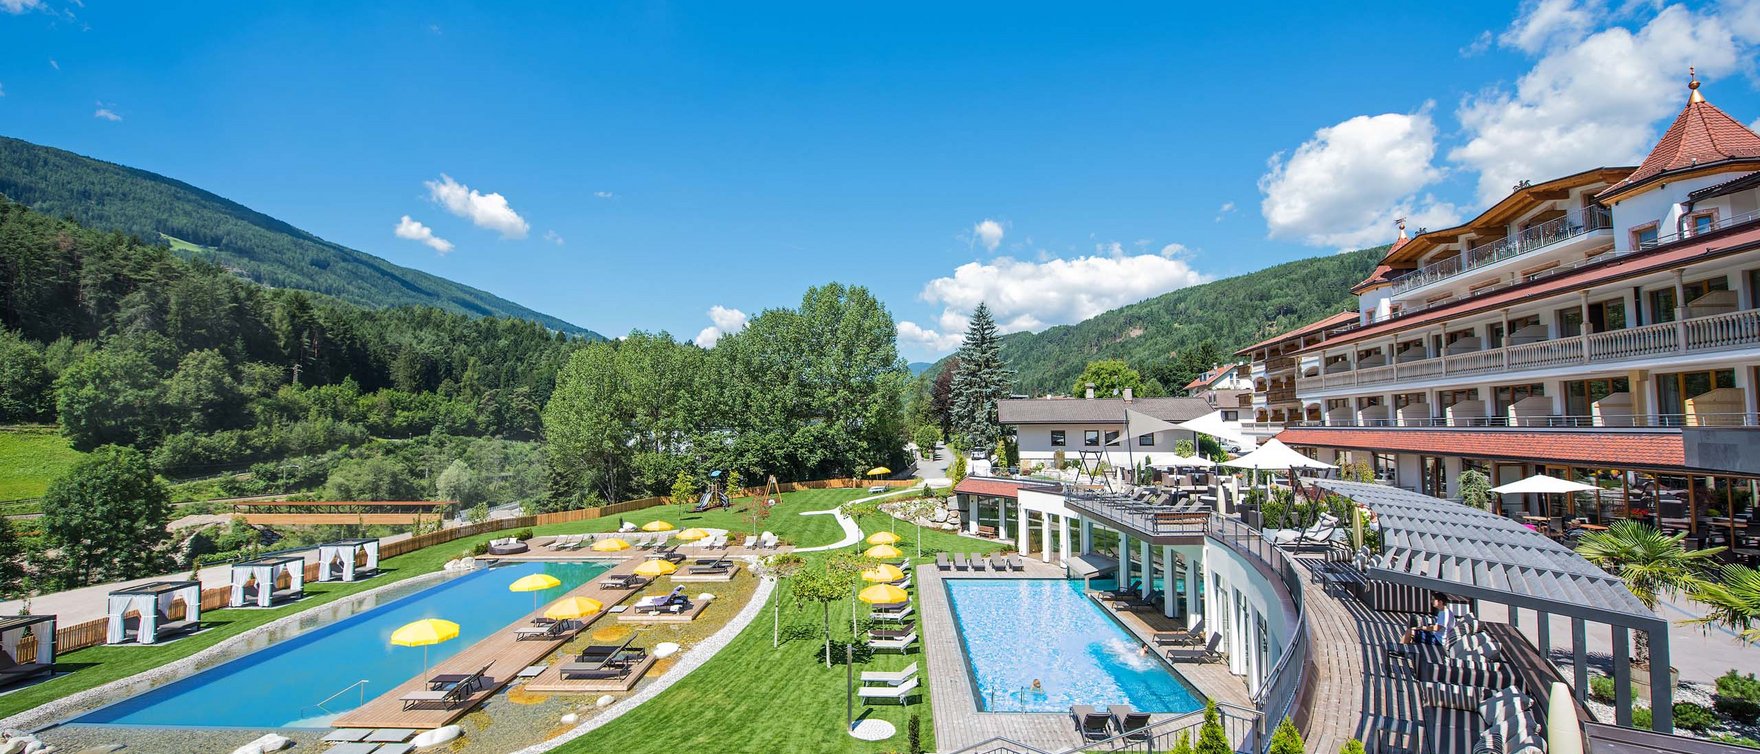 Südtirols schönste Orte: die Kronhotels